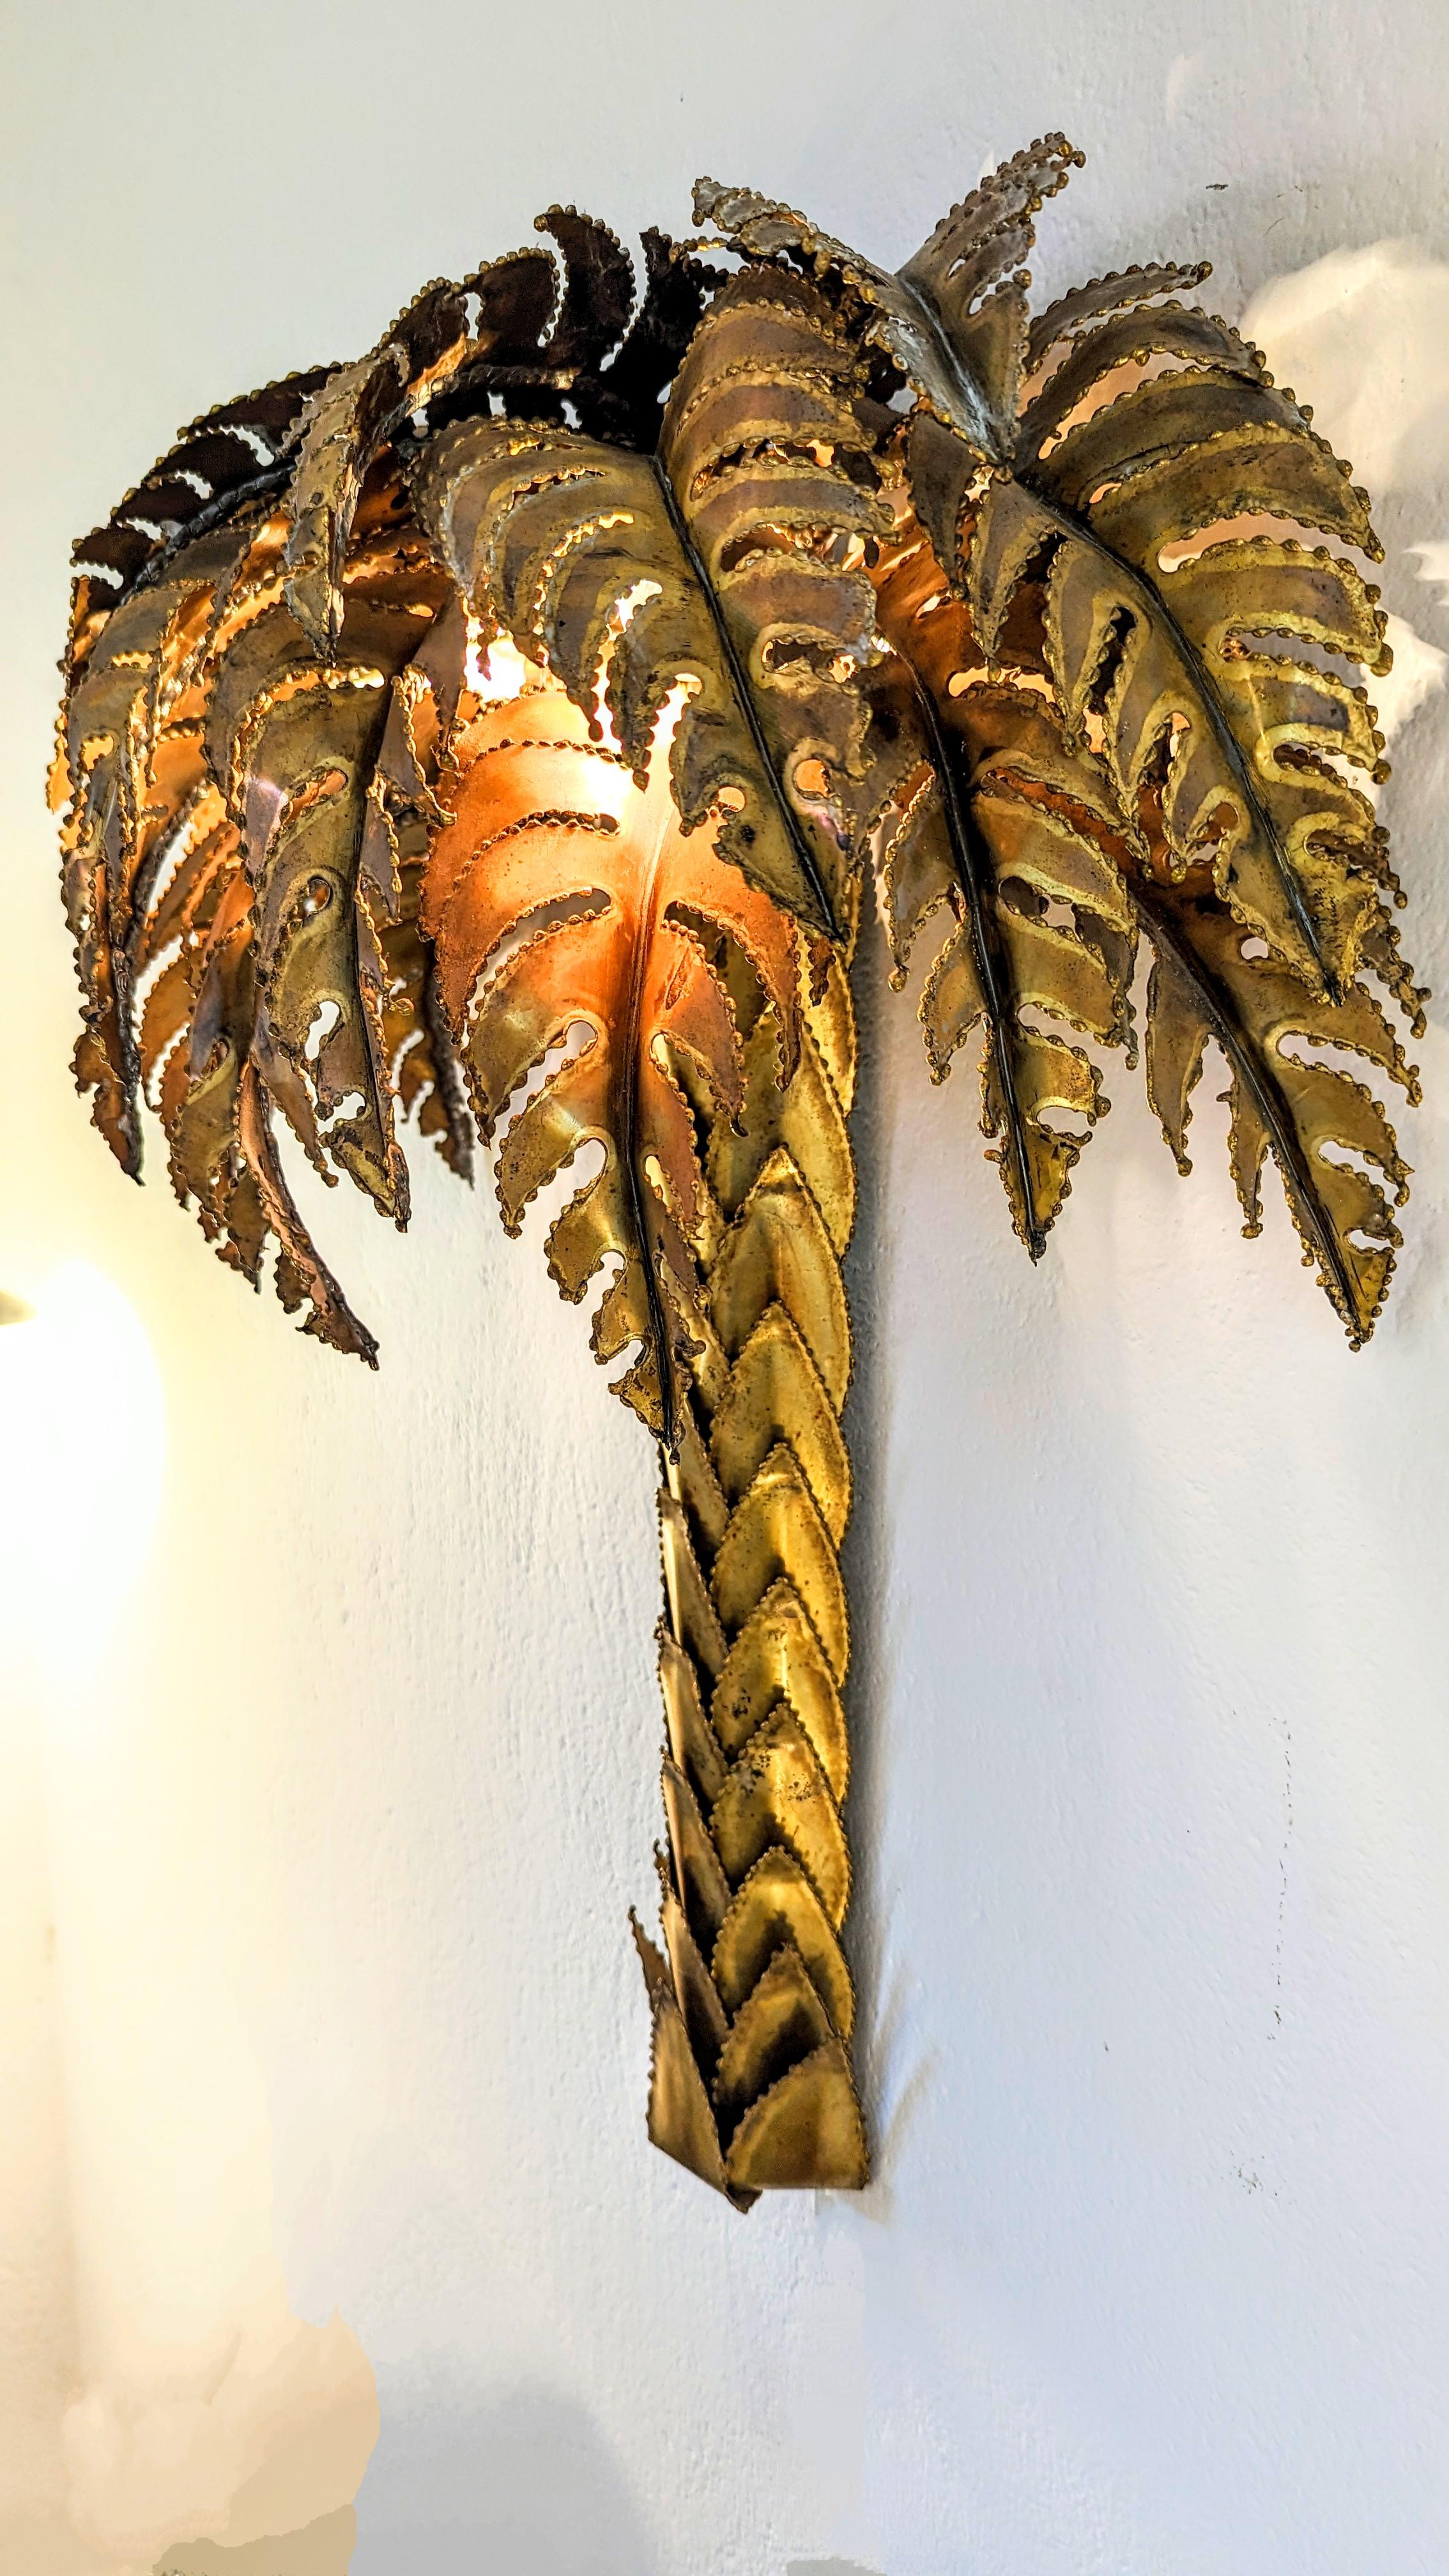 Belle et rare grande applique en forme de palmier de la Maison Jansen, fabriquée en France dans les années 1970. Deux prises E14 à l'intérieur, fonctionnant parfaitement avec les normes électriques américaines ou britanniques.
Cette applique est